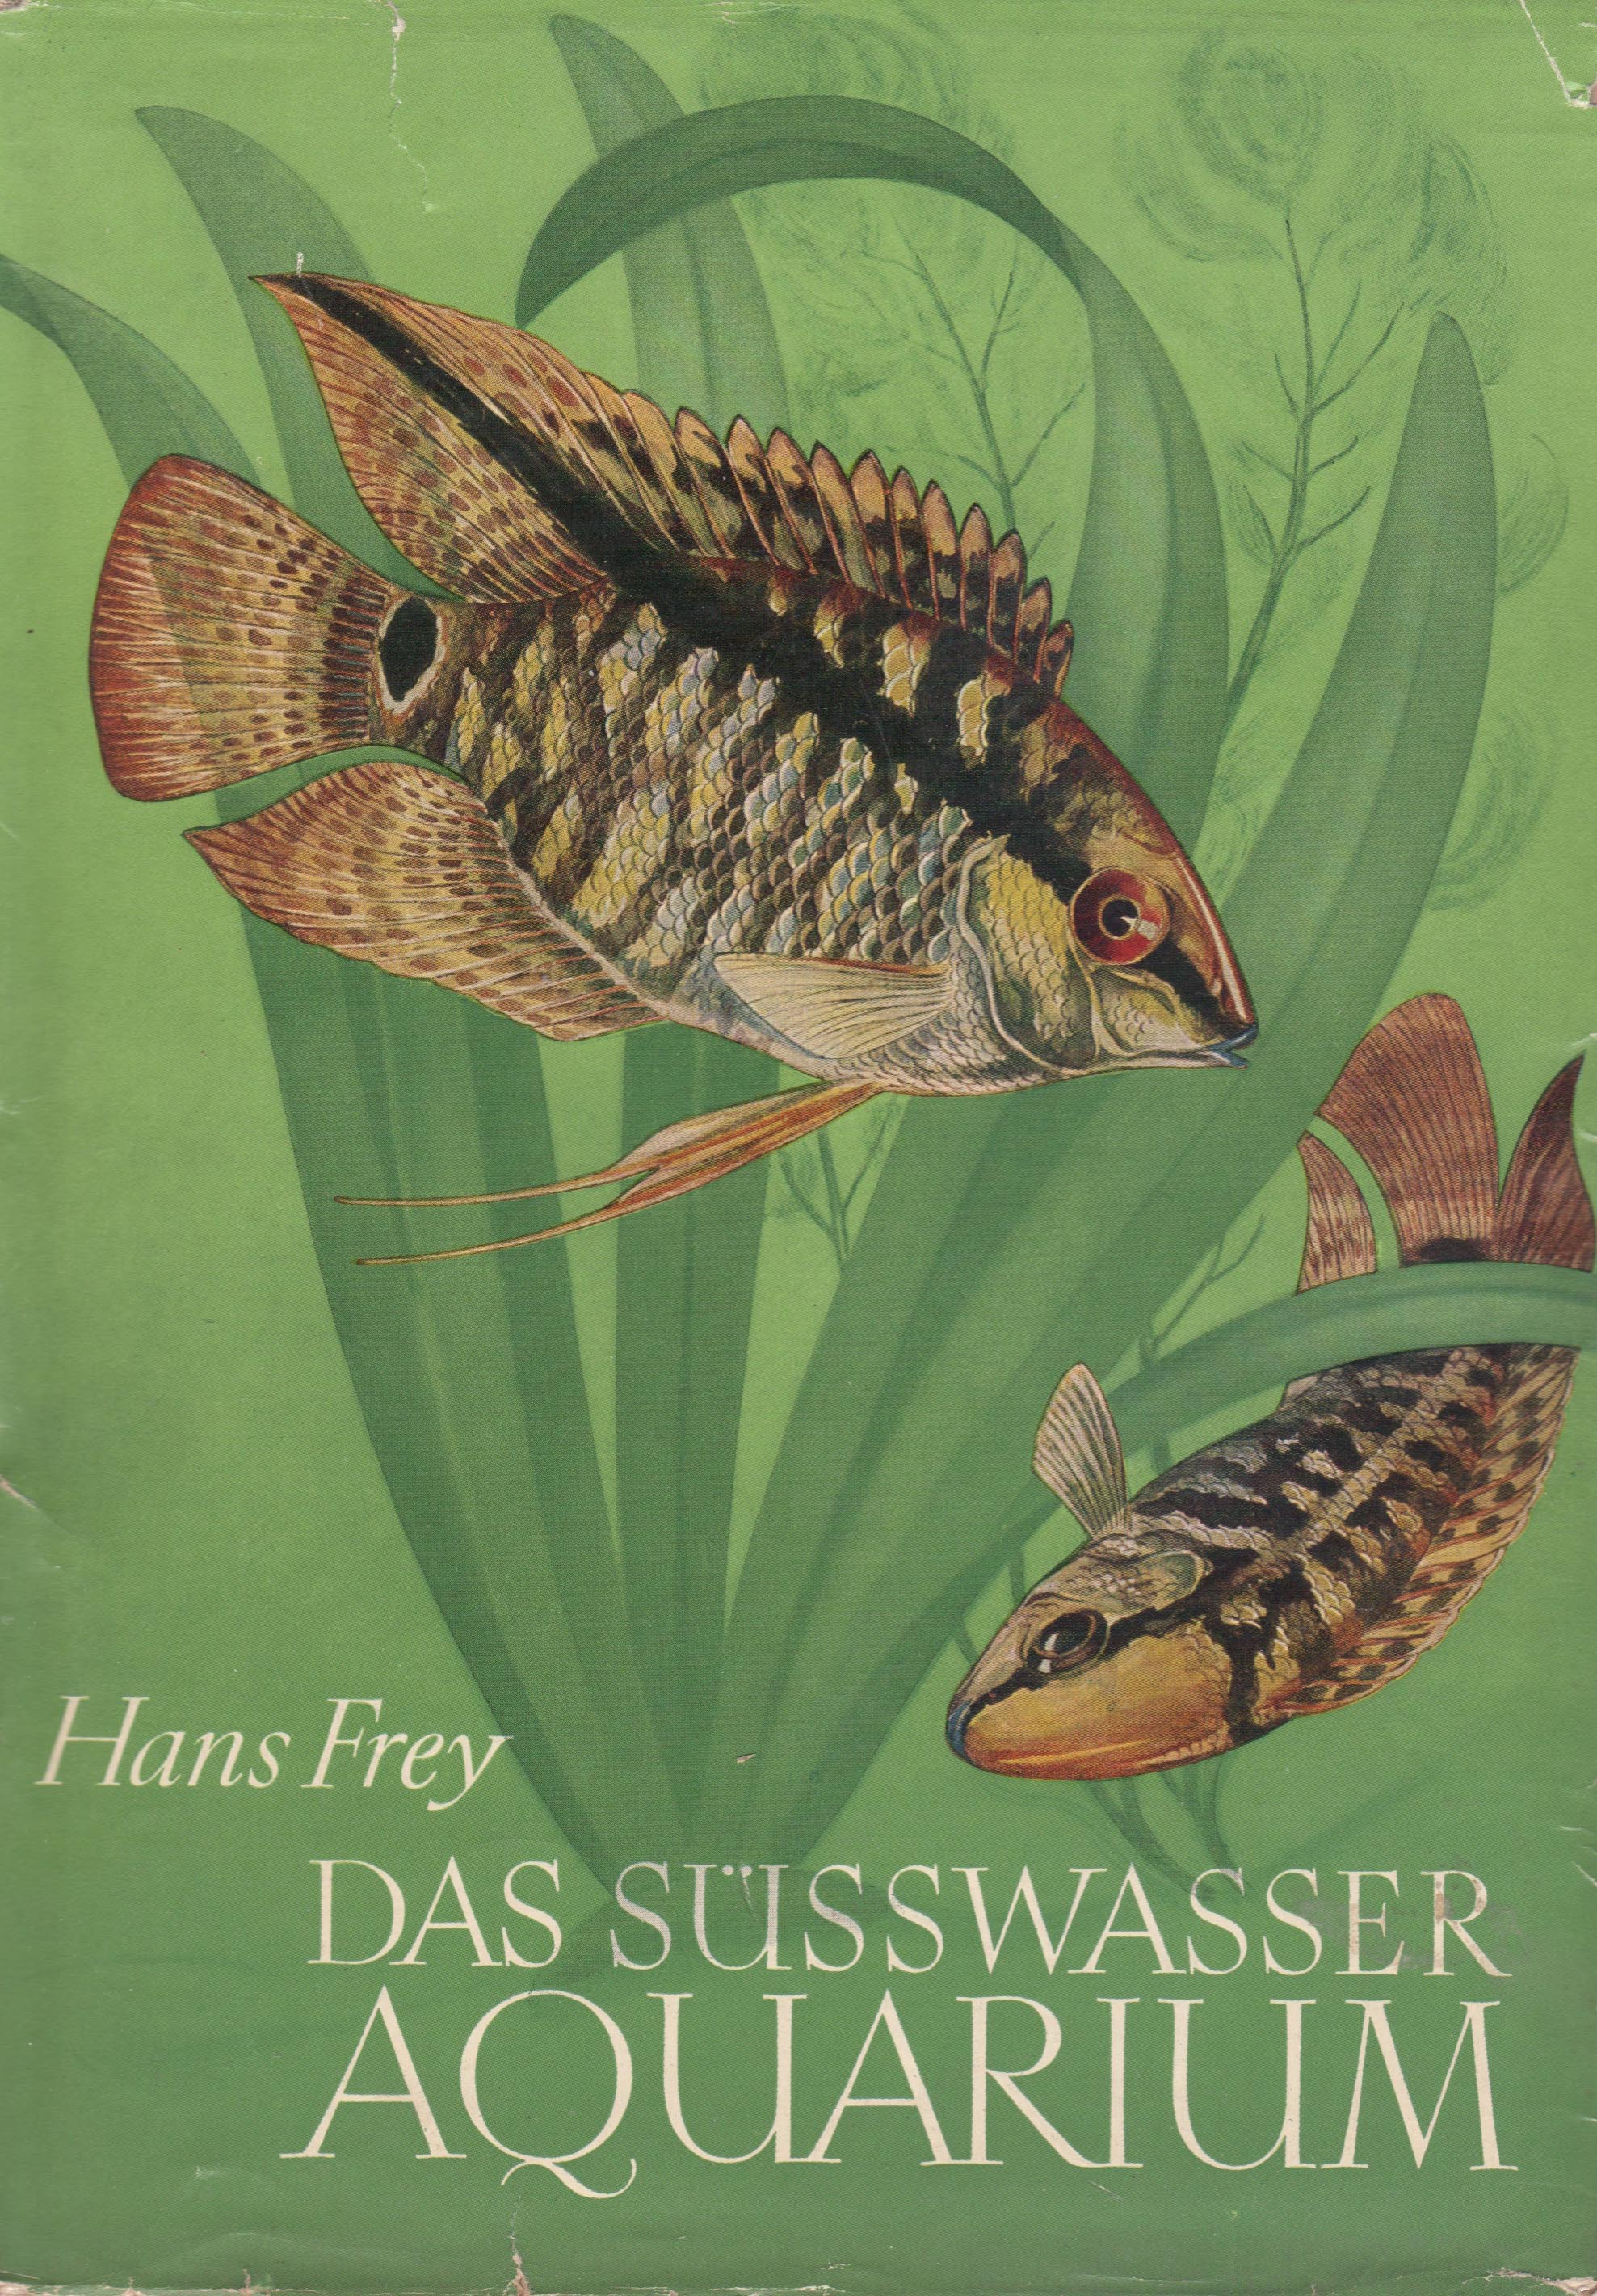 Das Süsswasser-Aquarium (Hans Frey)